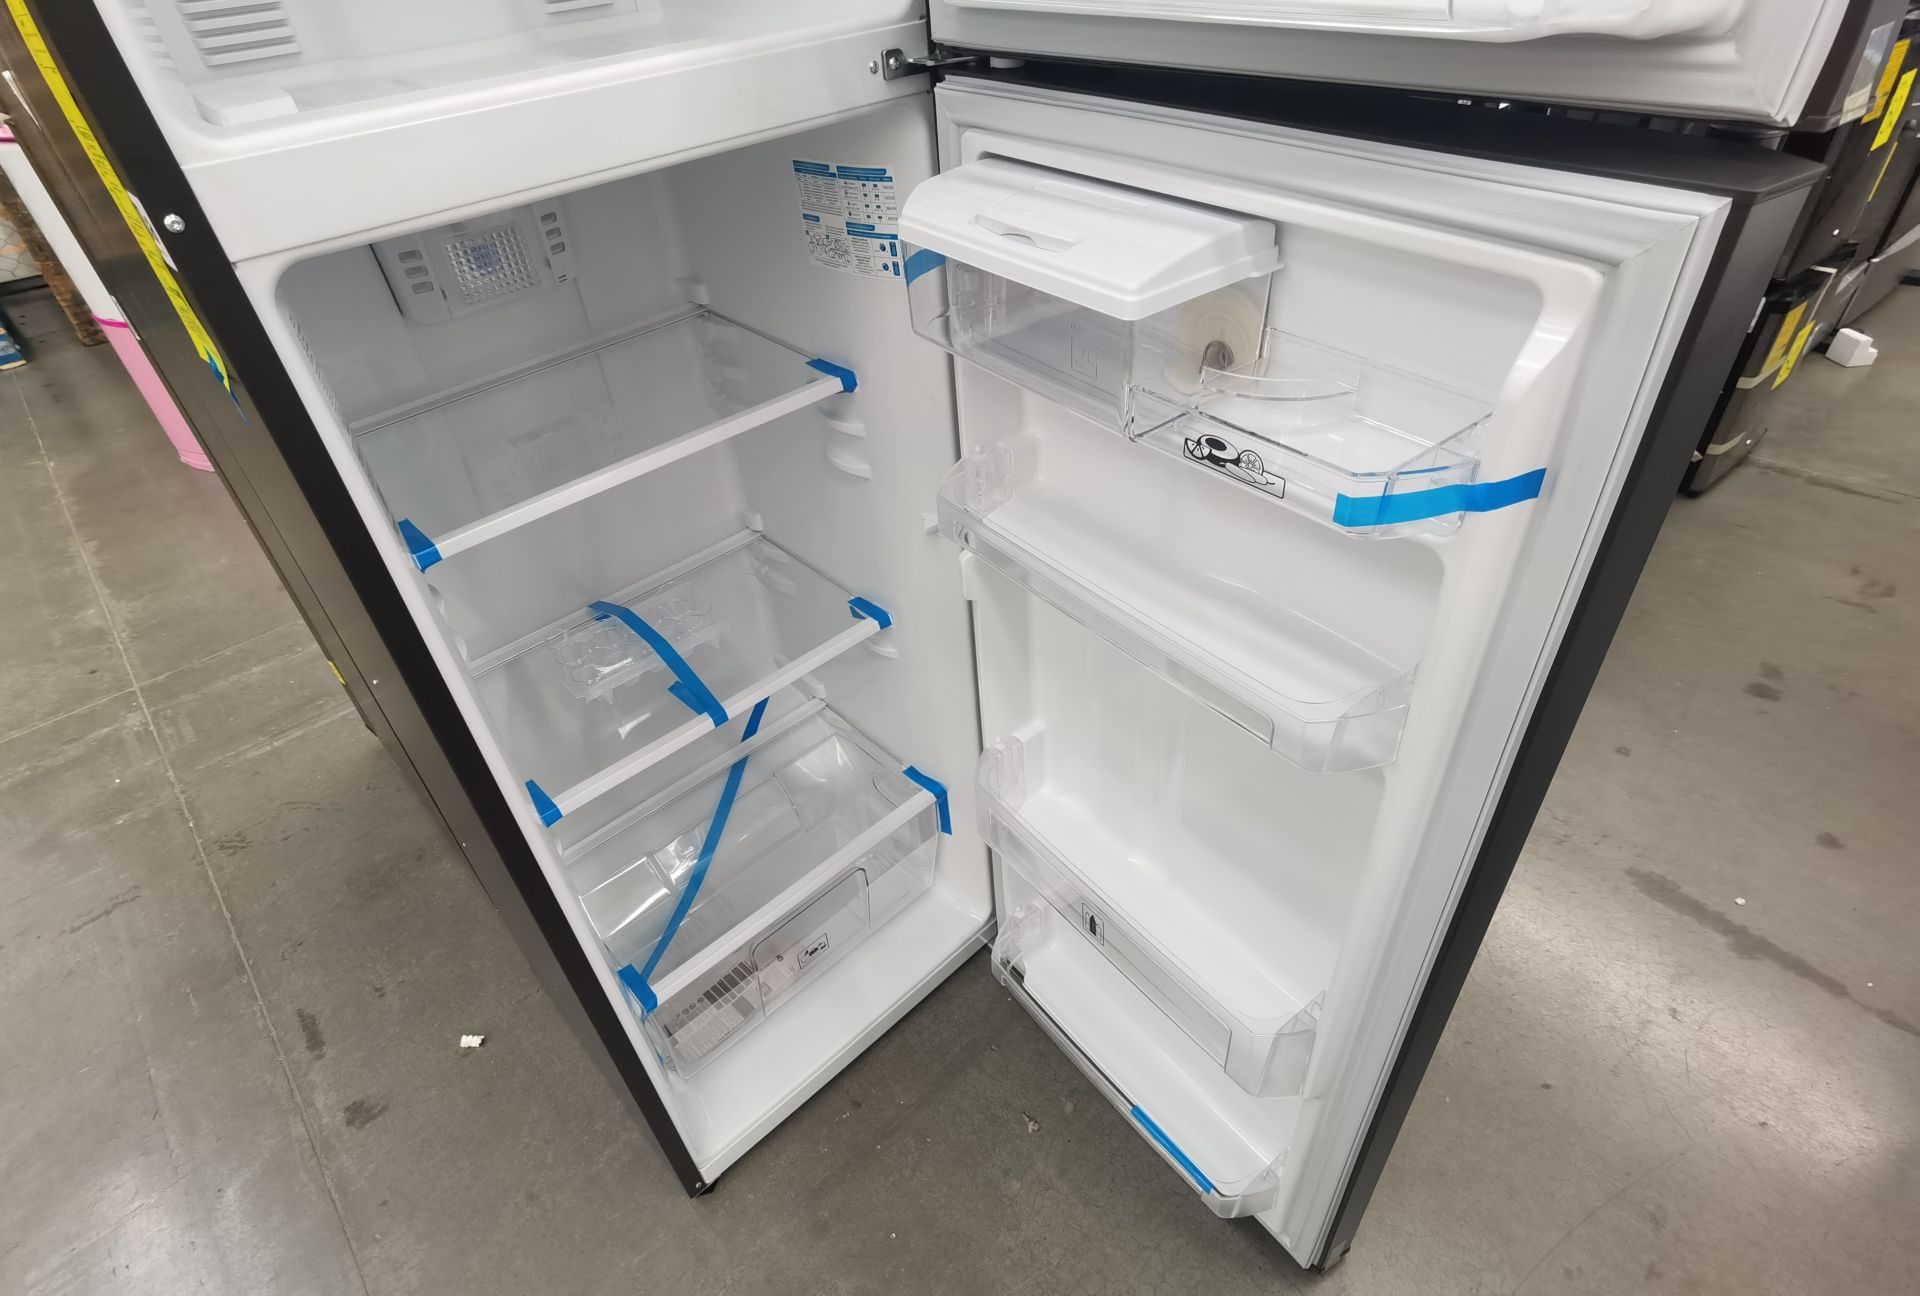 1 Refrigerador con dispensador de agua Marca MABE, Modelo RMA300FJMR, No de serie 2209B702213 - Image 5 of 6